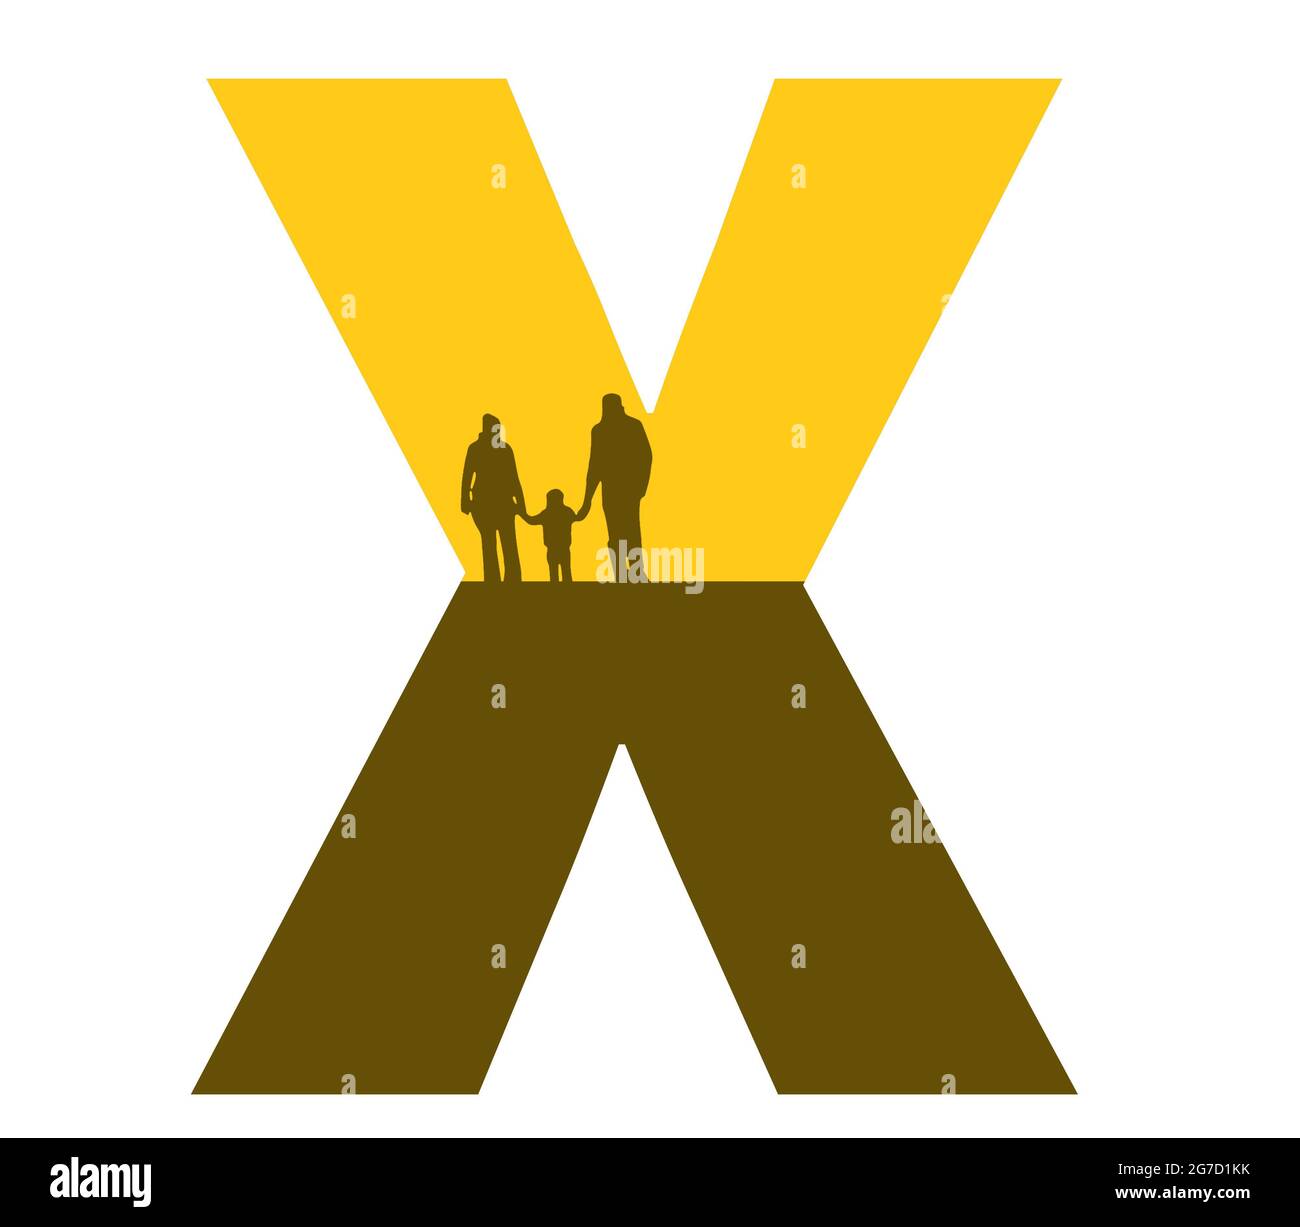 Lettre X de l'alphabet avec une silhouette de famille, de père, de mère et d'enfant, de couleur ocre et marron Banque D'Images